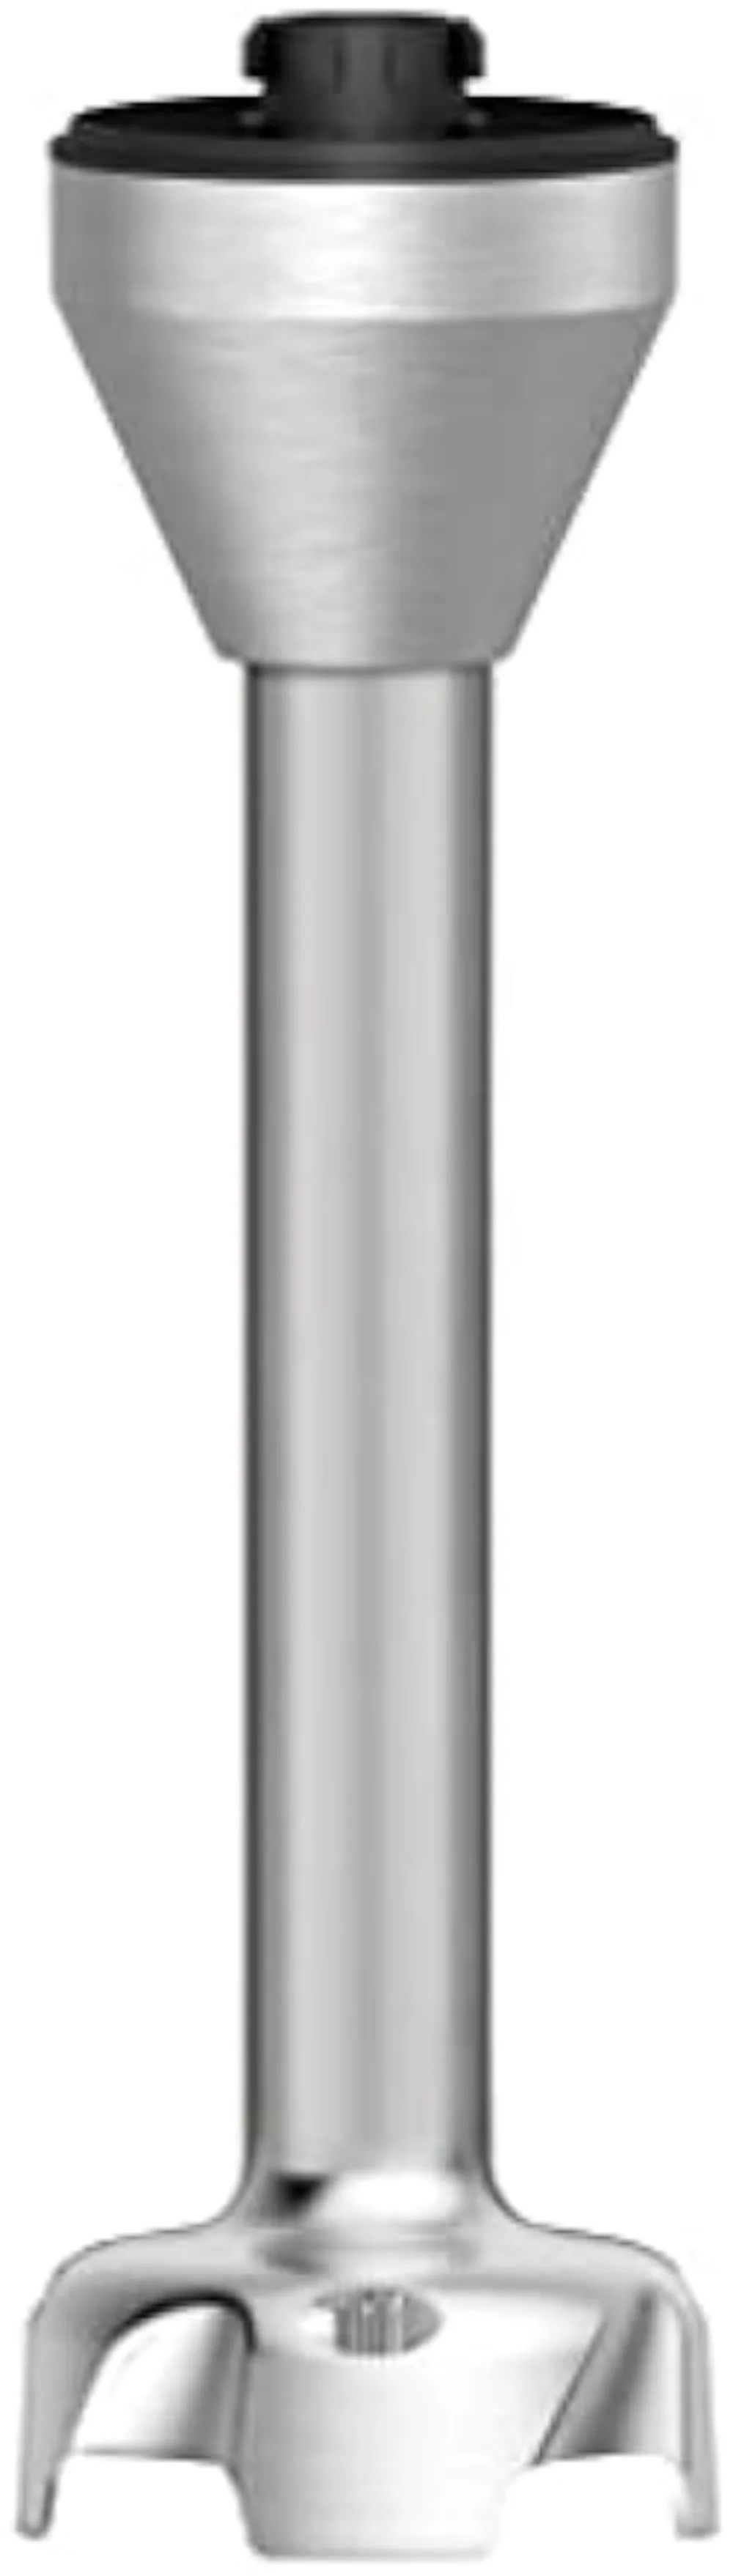 https://ae01.alicdn.com/kf/Sf050d53b55cb4be781c7ba18a88cdb1fn/Cuisinart-CSB-179-Smart-Stick-Variable-Speed-Hand-Blender-Stainless-Steel.jpg